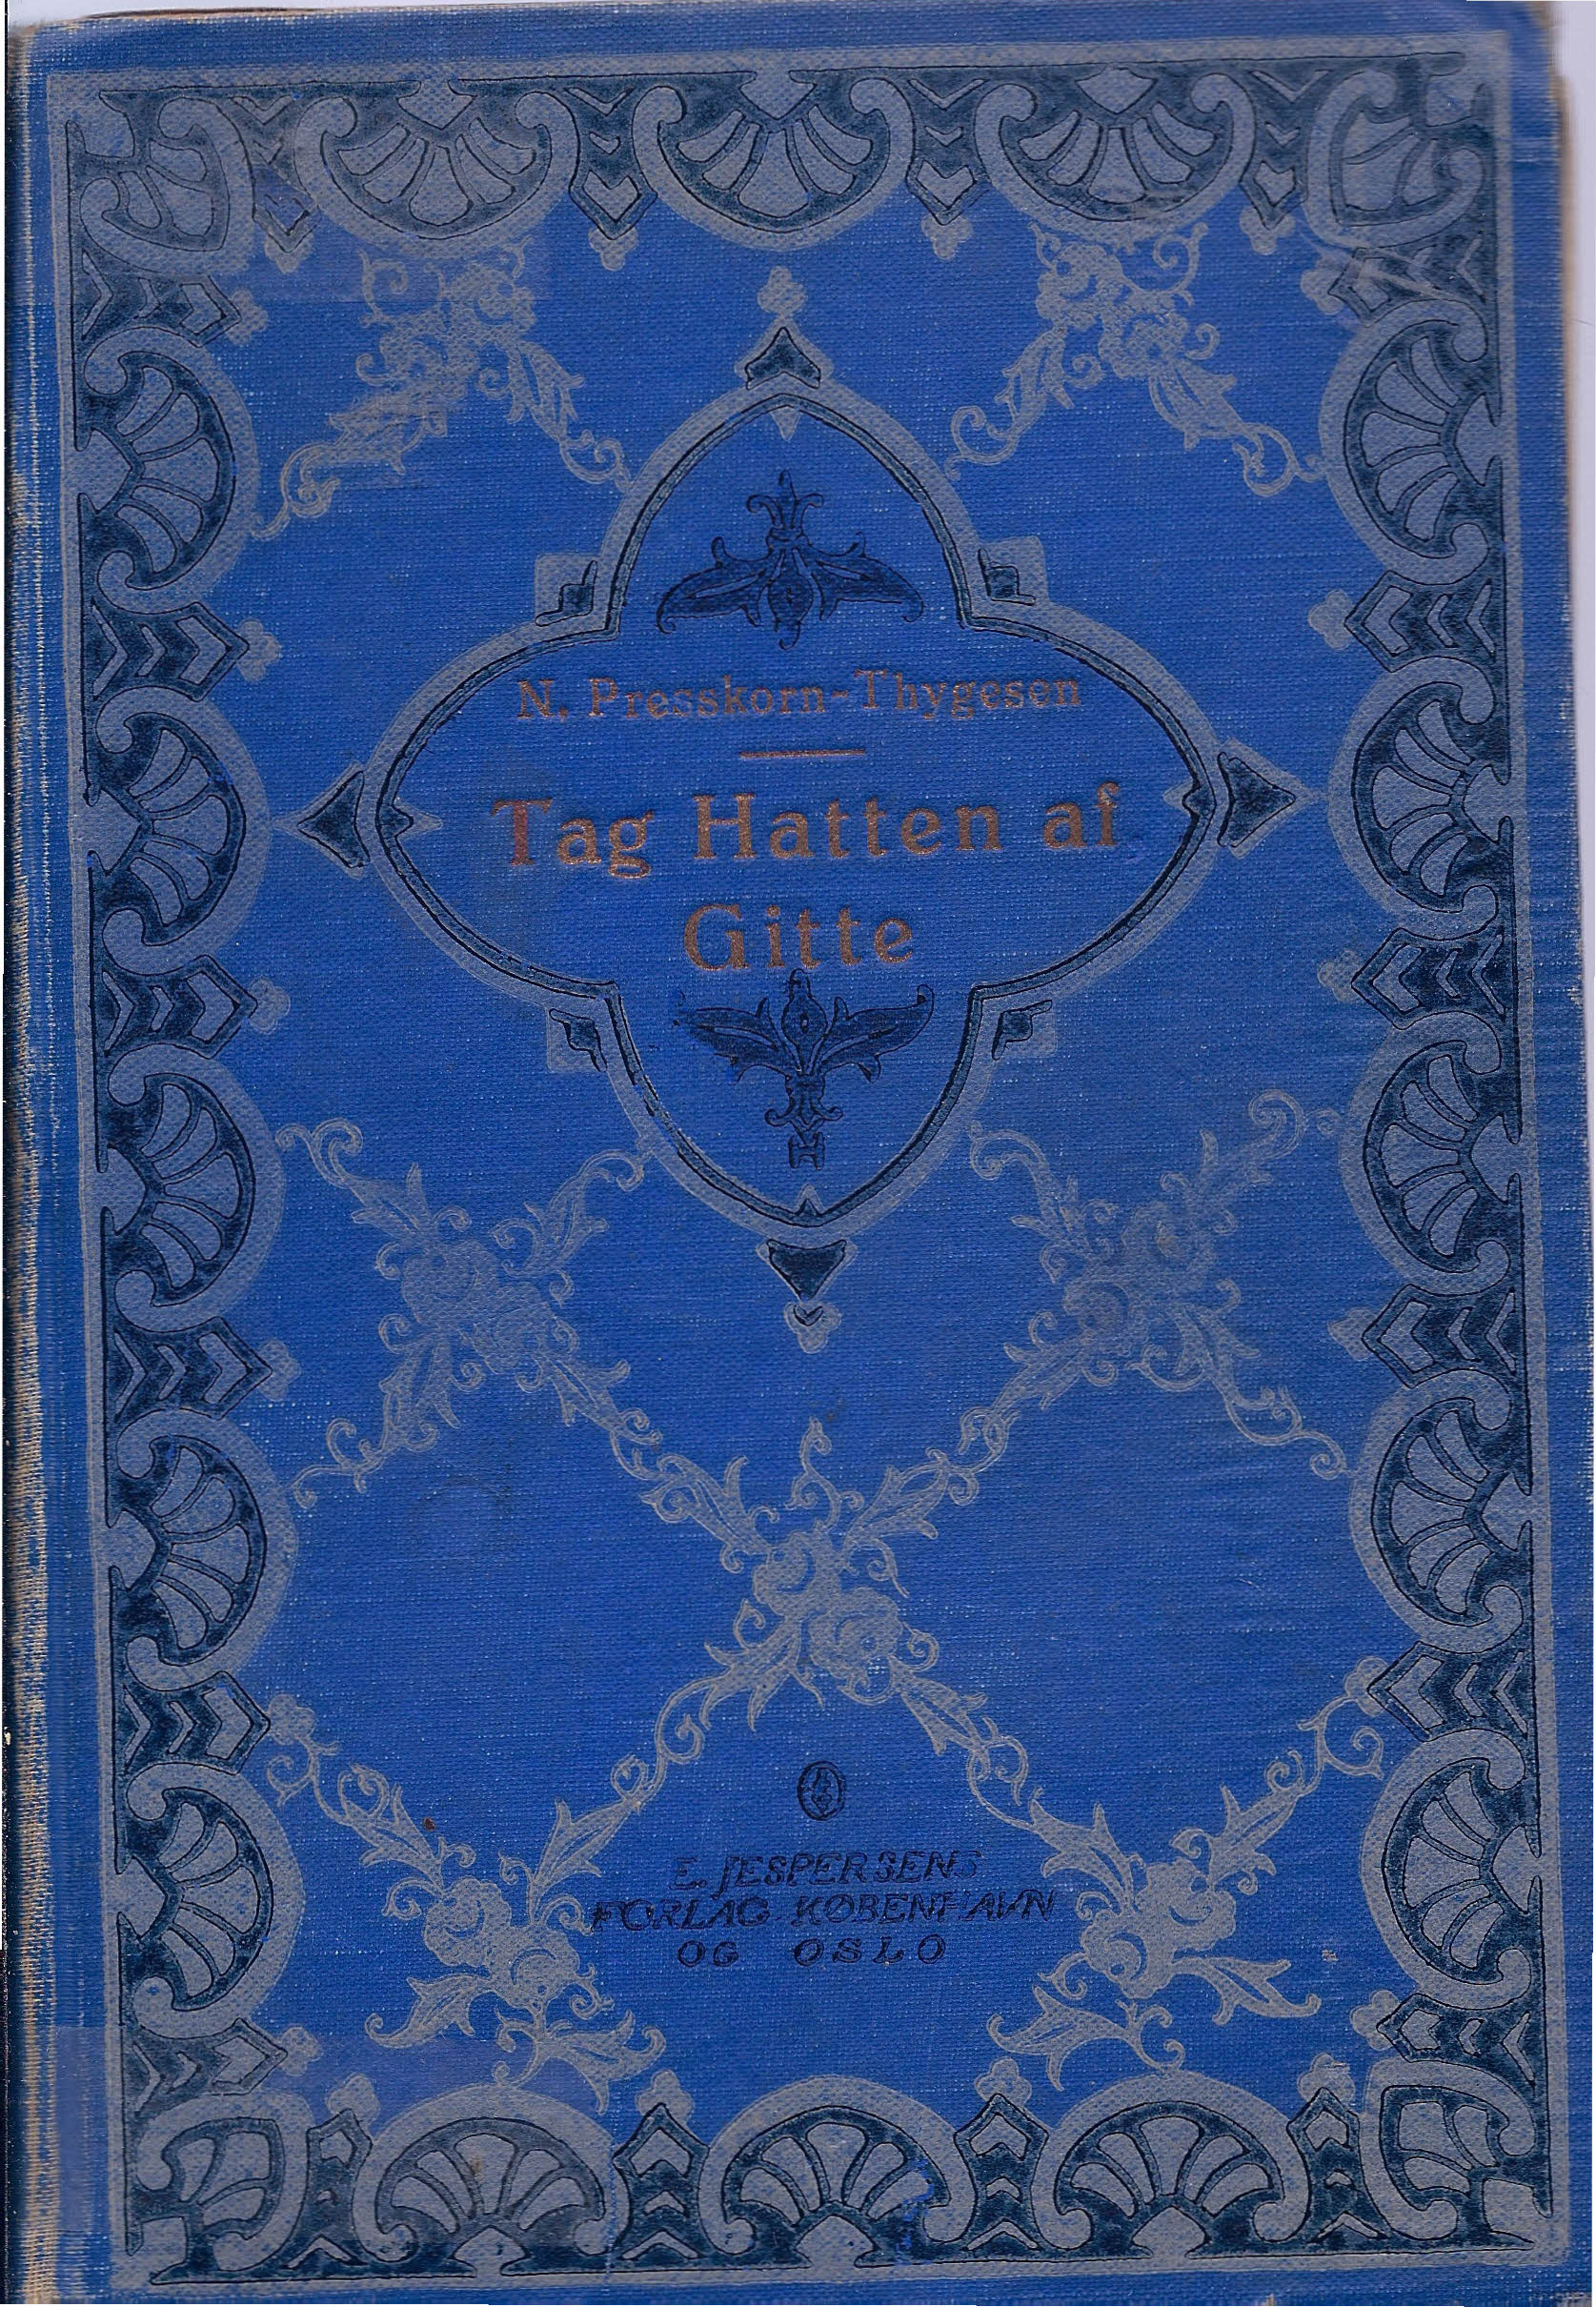 Tag Hatten af Gitte - Ninni Presskorn-Thygesen 1928-1